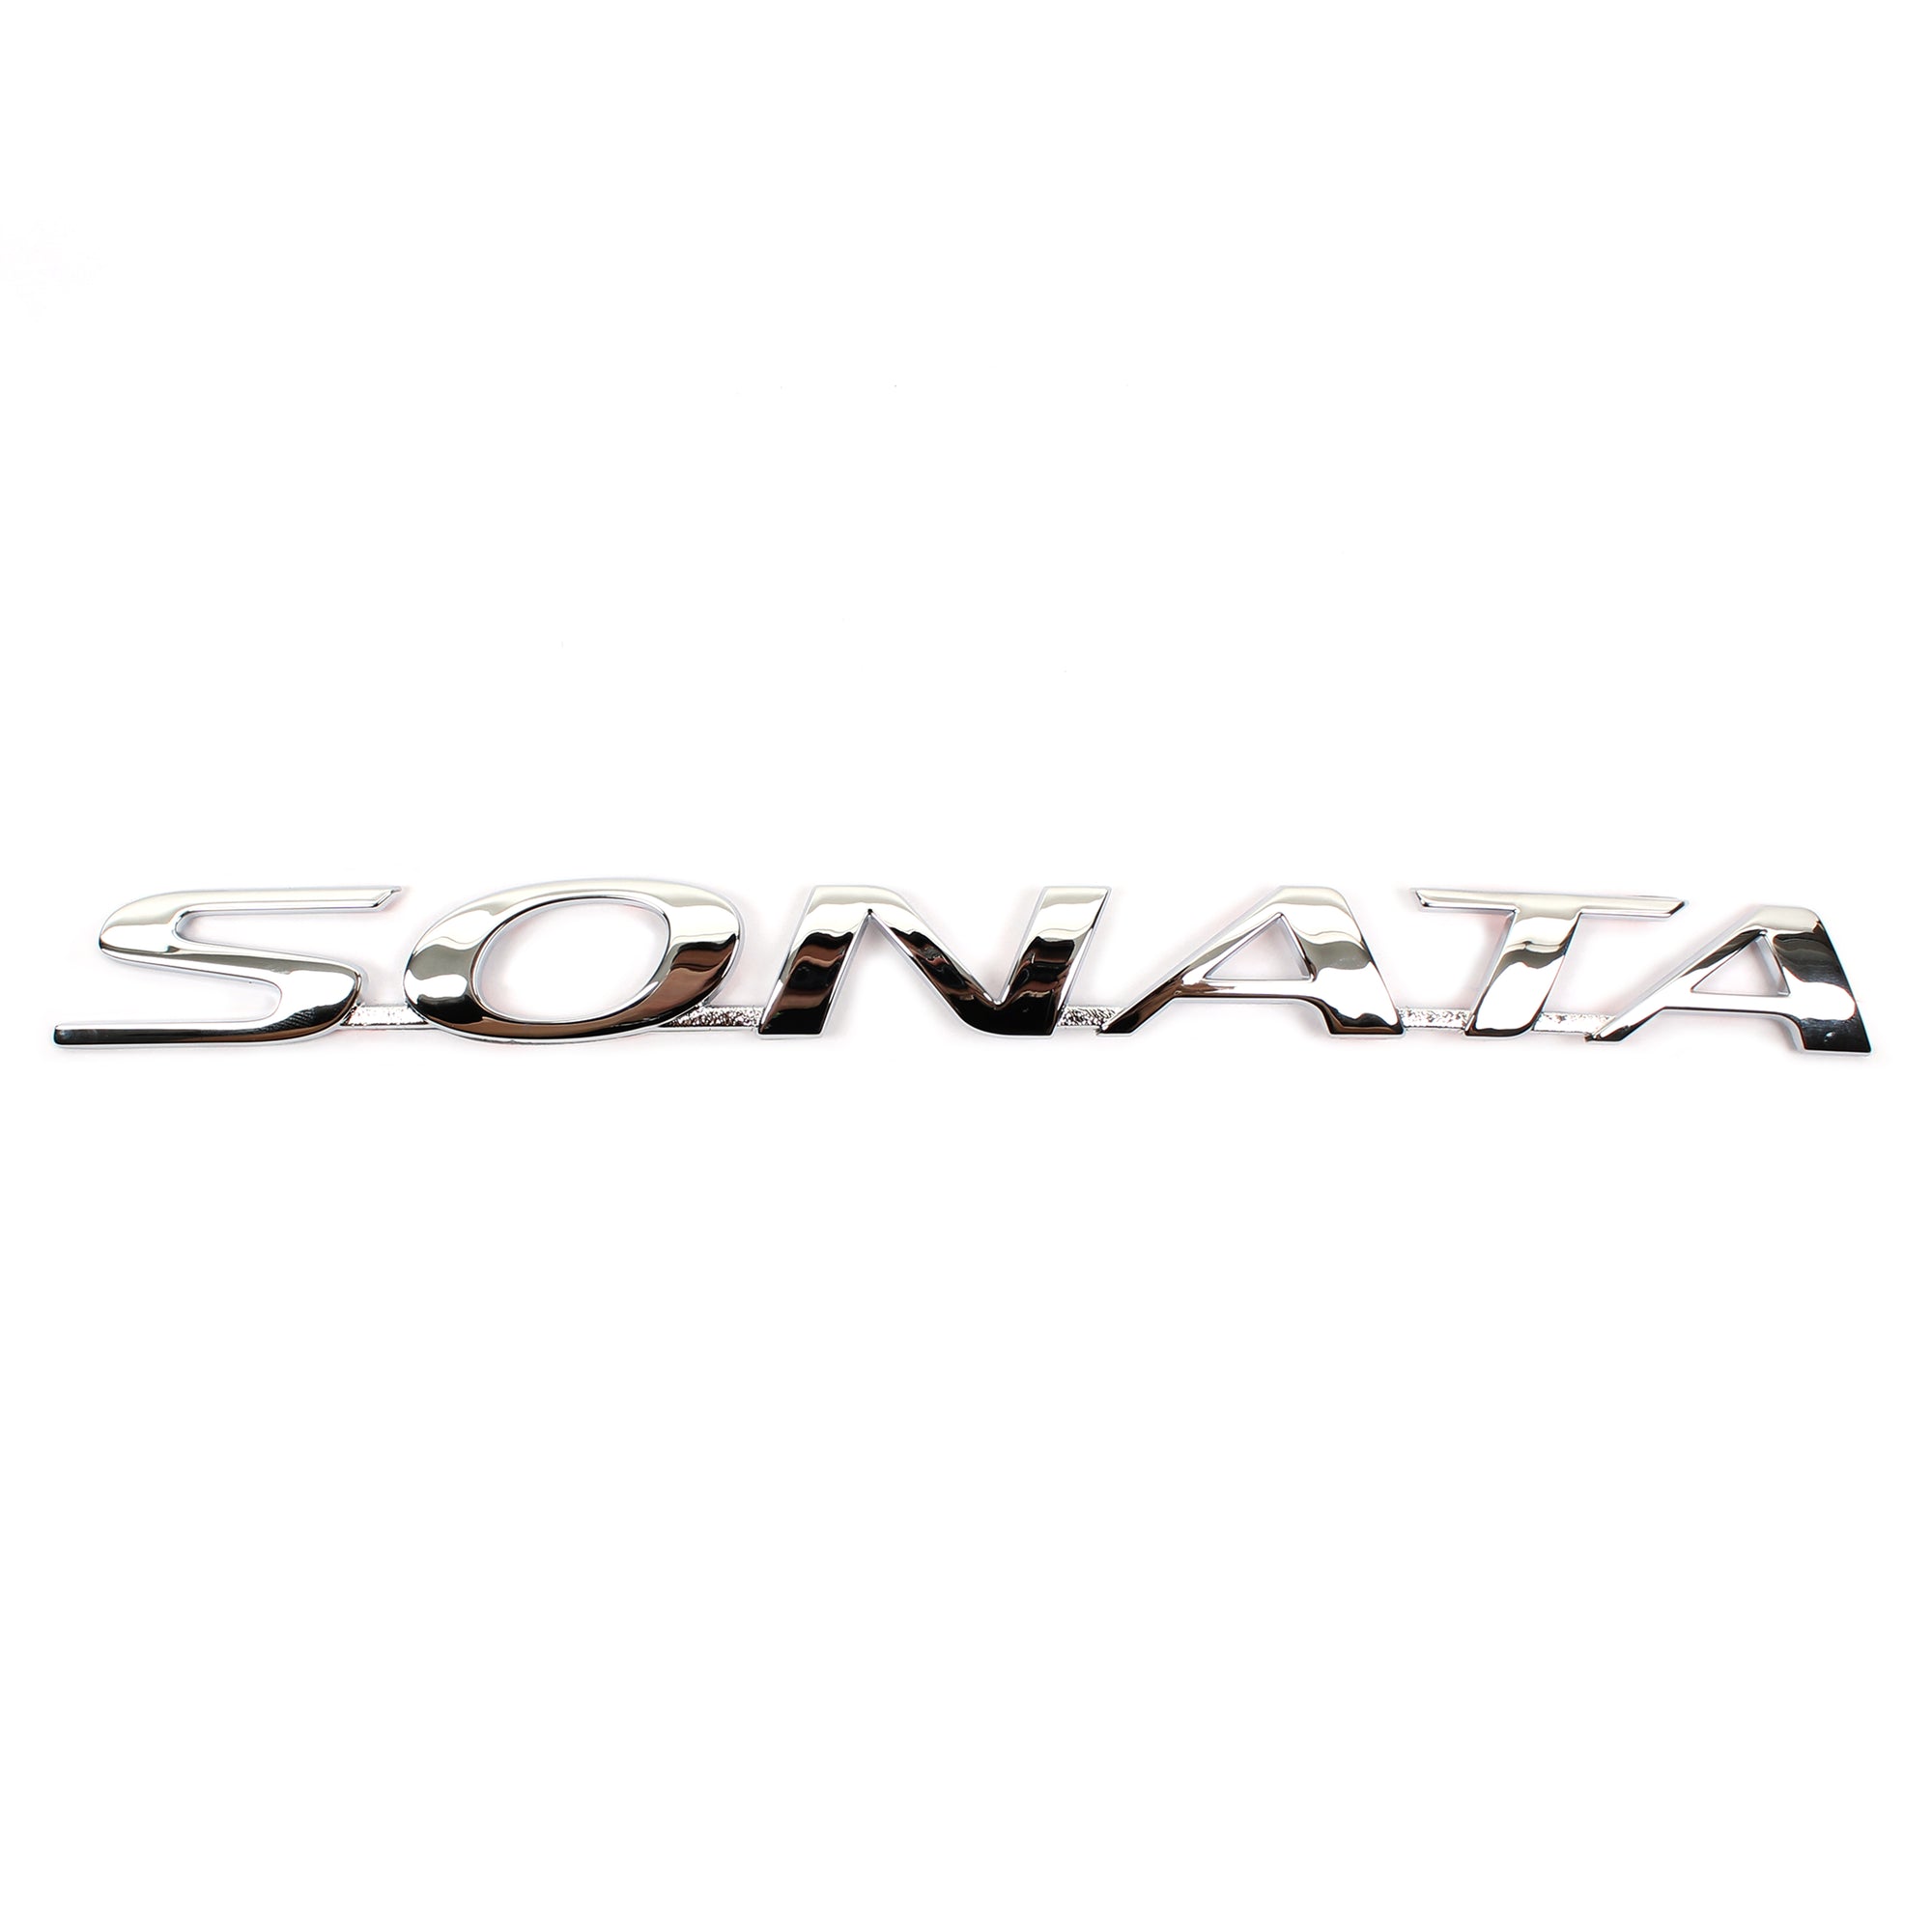 GENUINE REAR Trunk Emblem Badge for 2006-2010 Hyundai Sonata OEM 863103K000